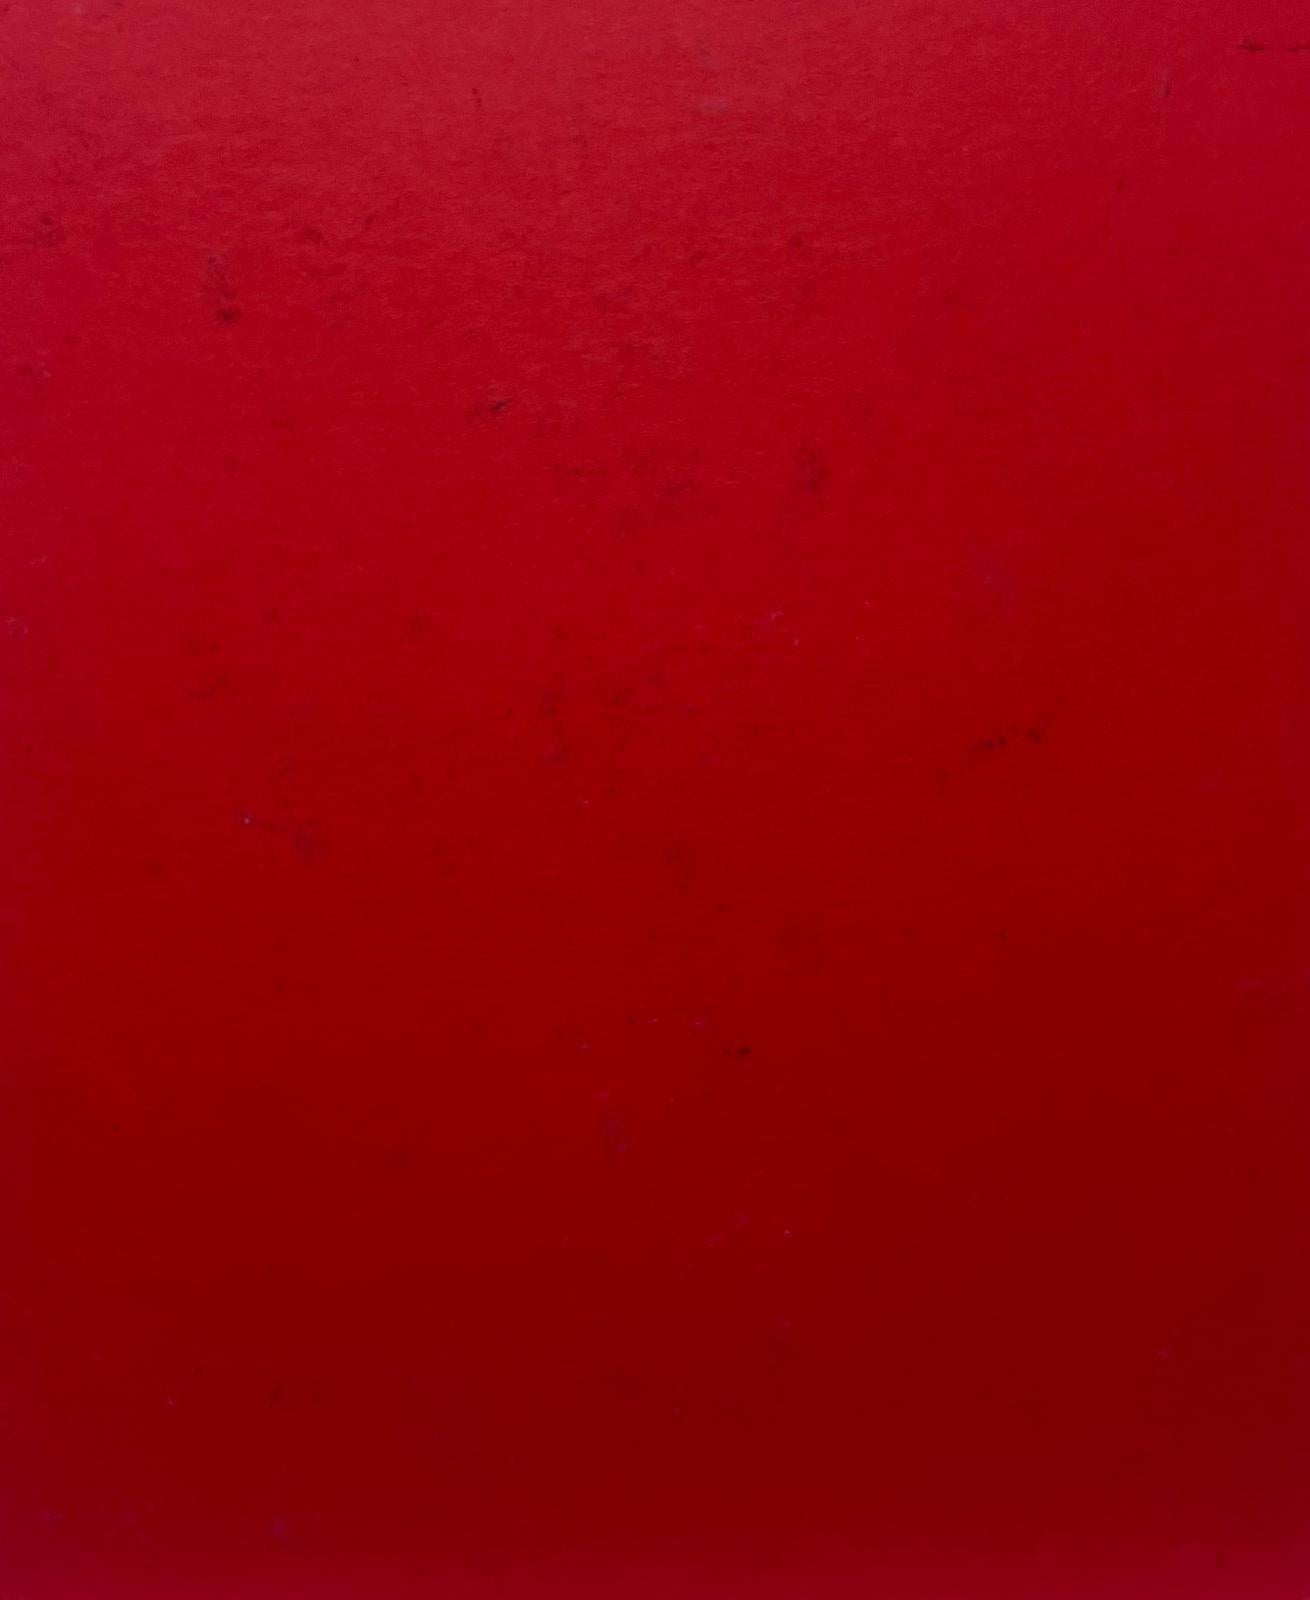 Abstrakte Komposition 
von Sally Vaughan (zeitgenössisch)
Gouache-Gemälde auf Karton, ungerahmt
Abmessungen: 8,75 x 6,75 Zoll
Zustand: sehr gut
Provenienz: aus einer großen Privatsammlung dieses Künstlers in England